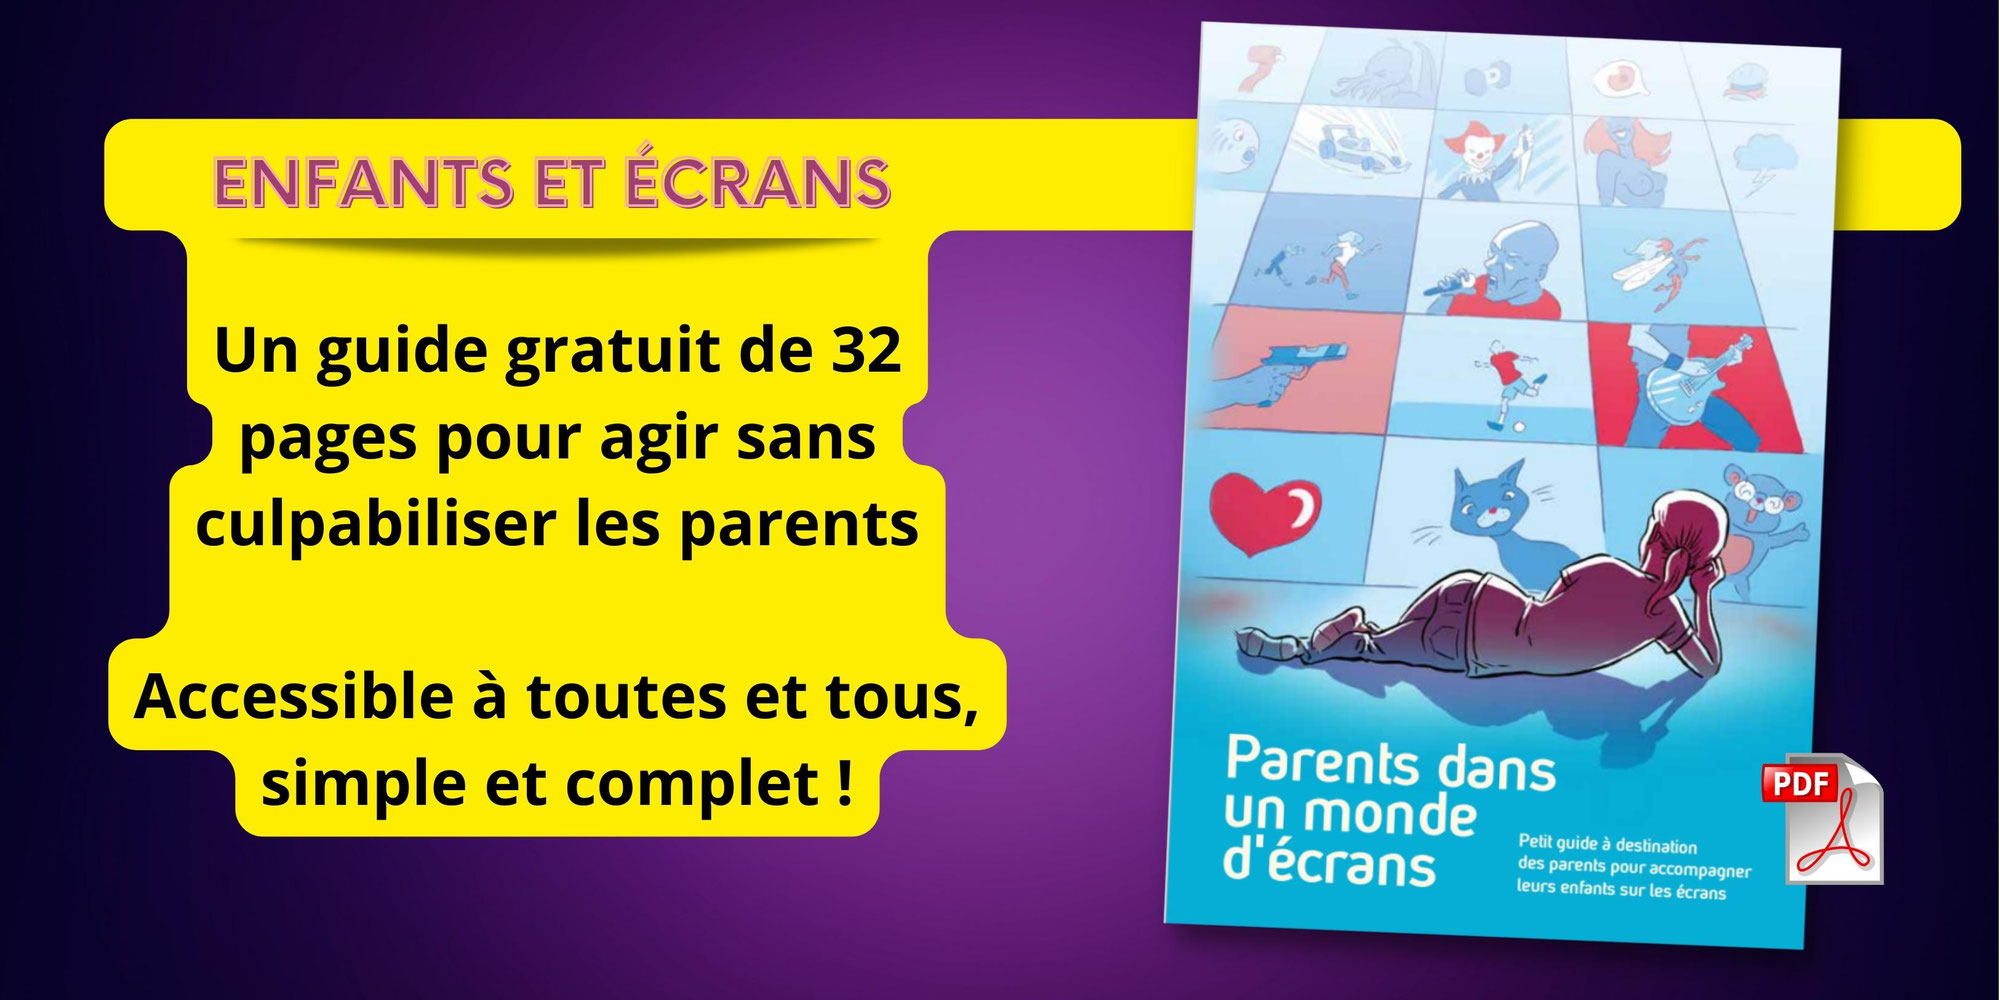 Moins d’écrans pour les enfants : un guide gratuit de 32 pages pour agir sans culpabiliser les parents